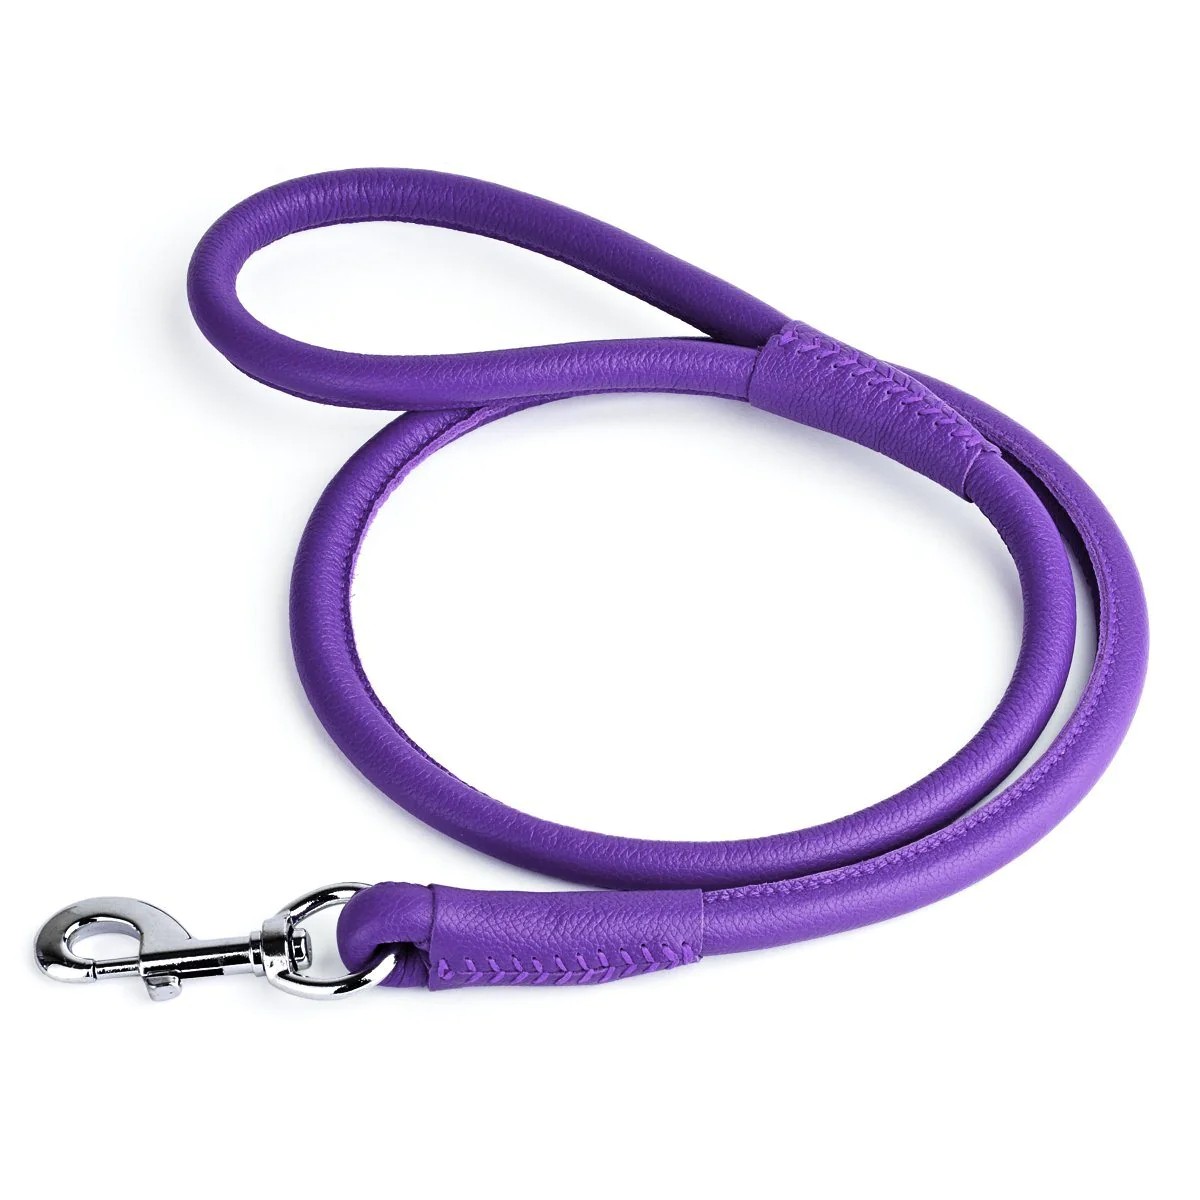 Dogline Soft Leather Round Dog Leash - Purple